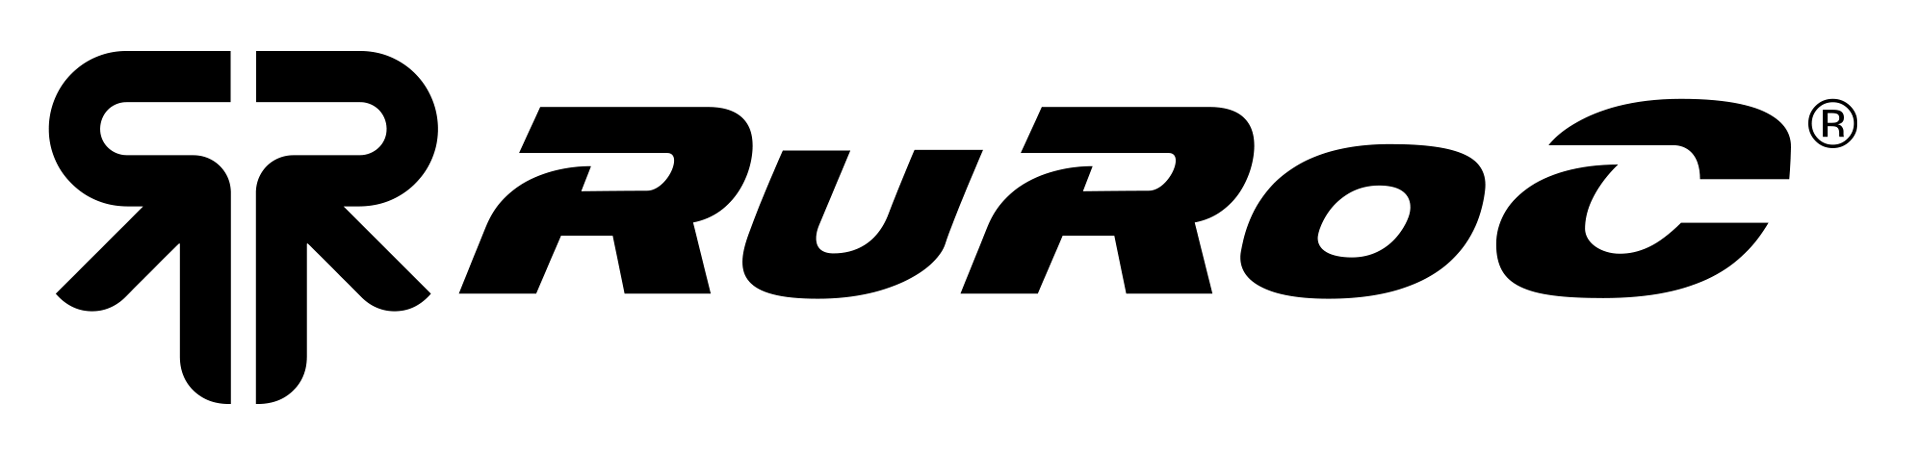 logo for Ruroc Ltd